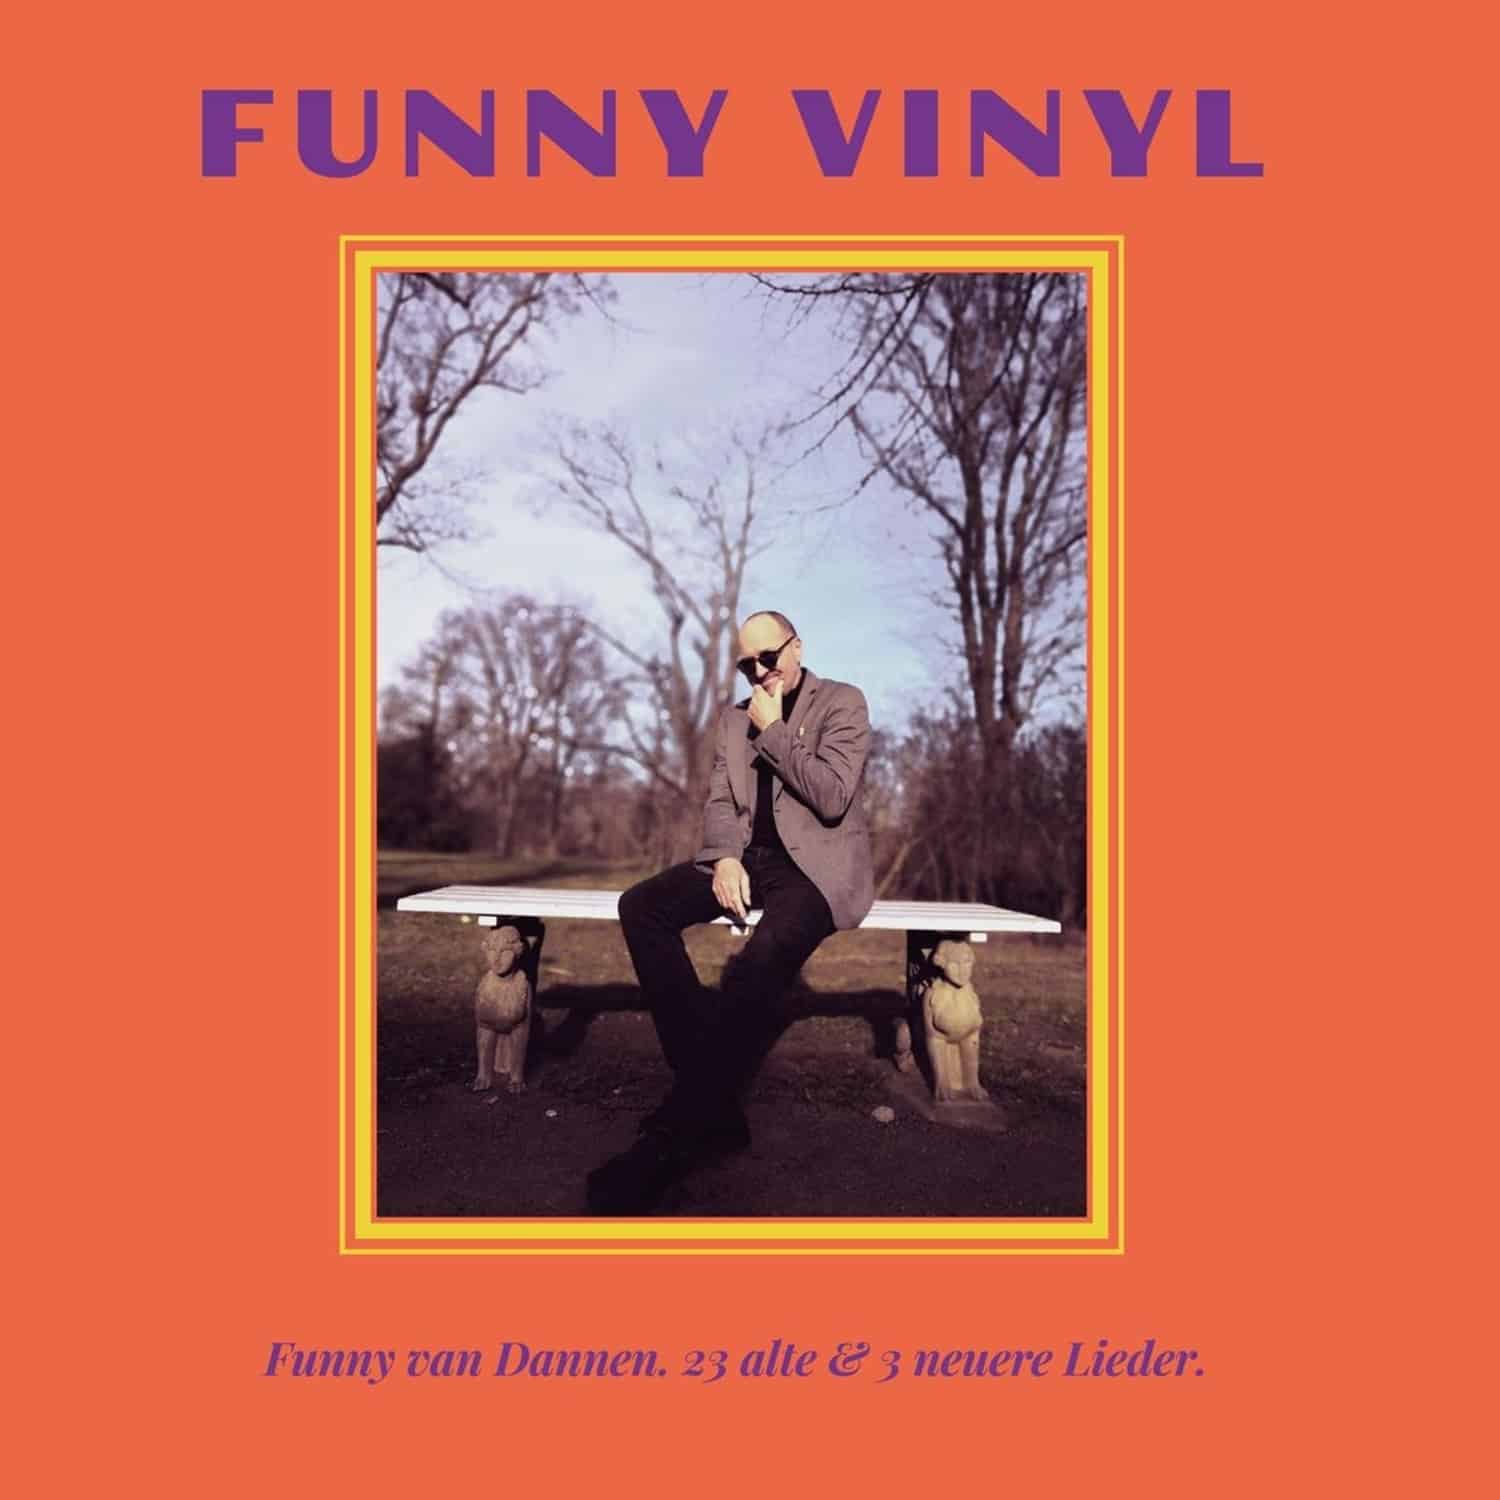 Funny van Dannen - FUNNY VINYL - 23 ALTE & 3 NEUERE LIEDER 